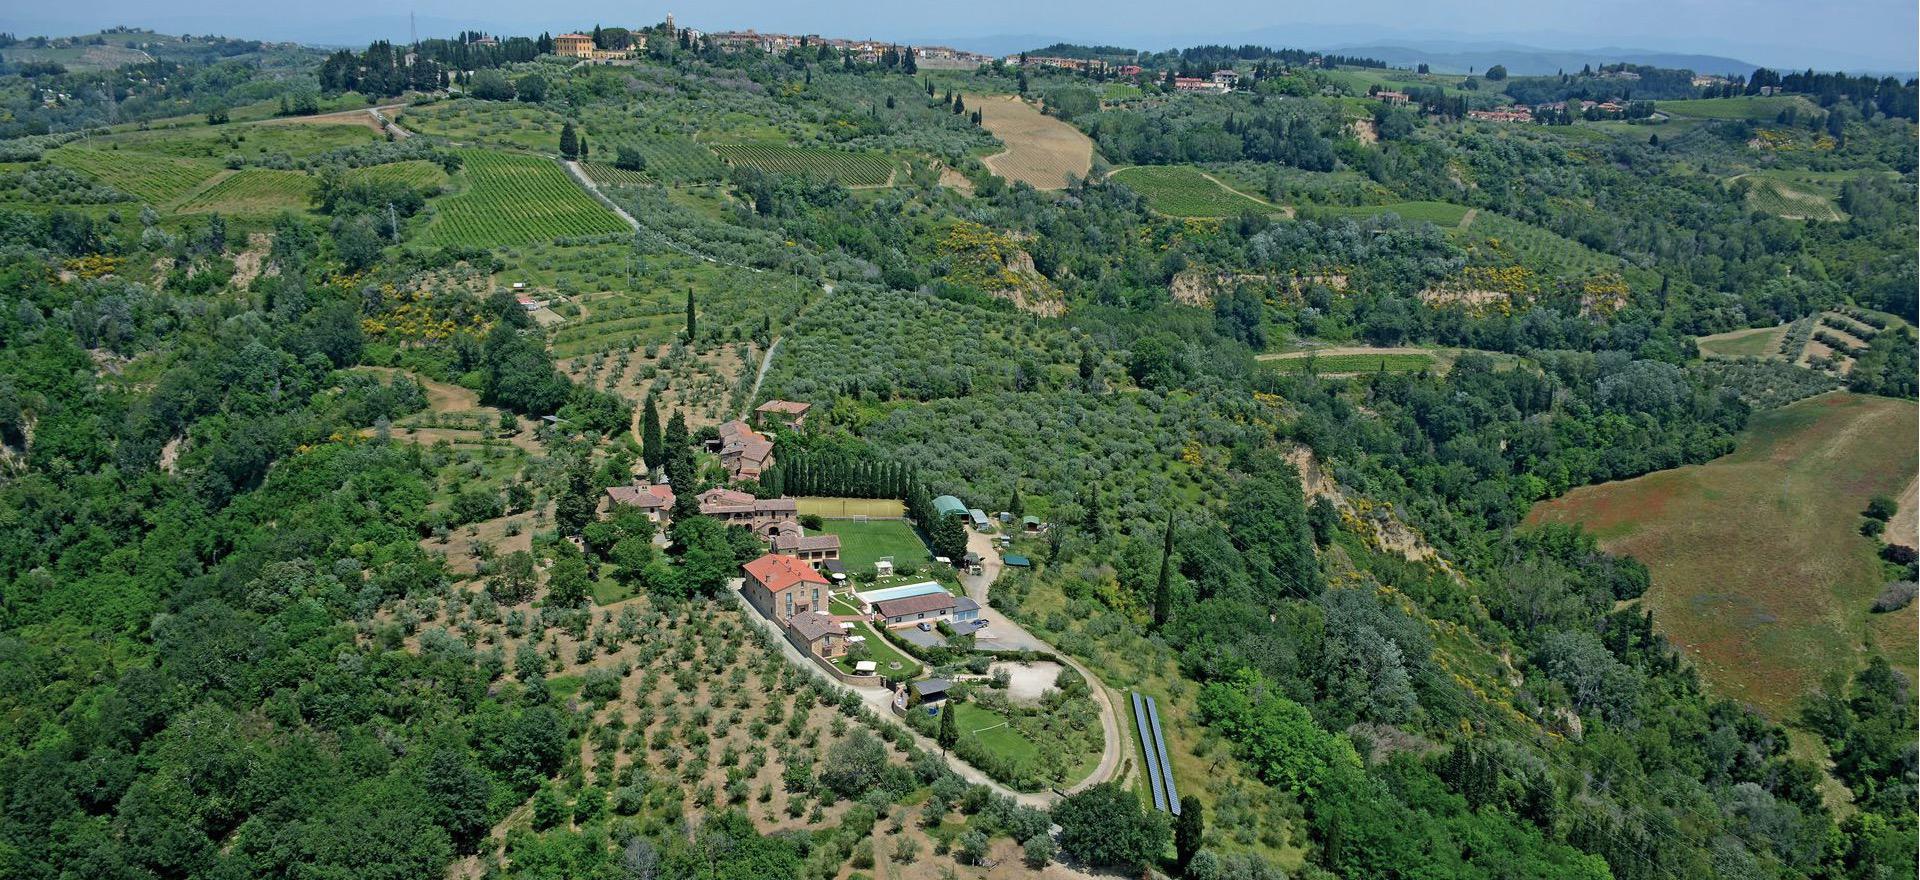 Agriturismo op een wijngaard met veel sportfaciliteiten in Toscane